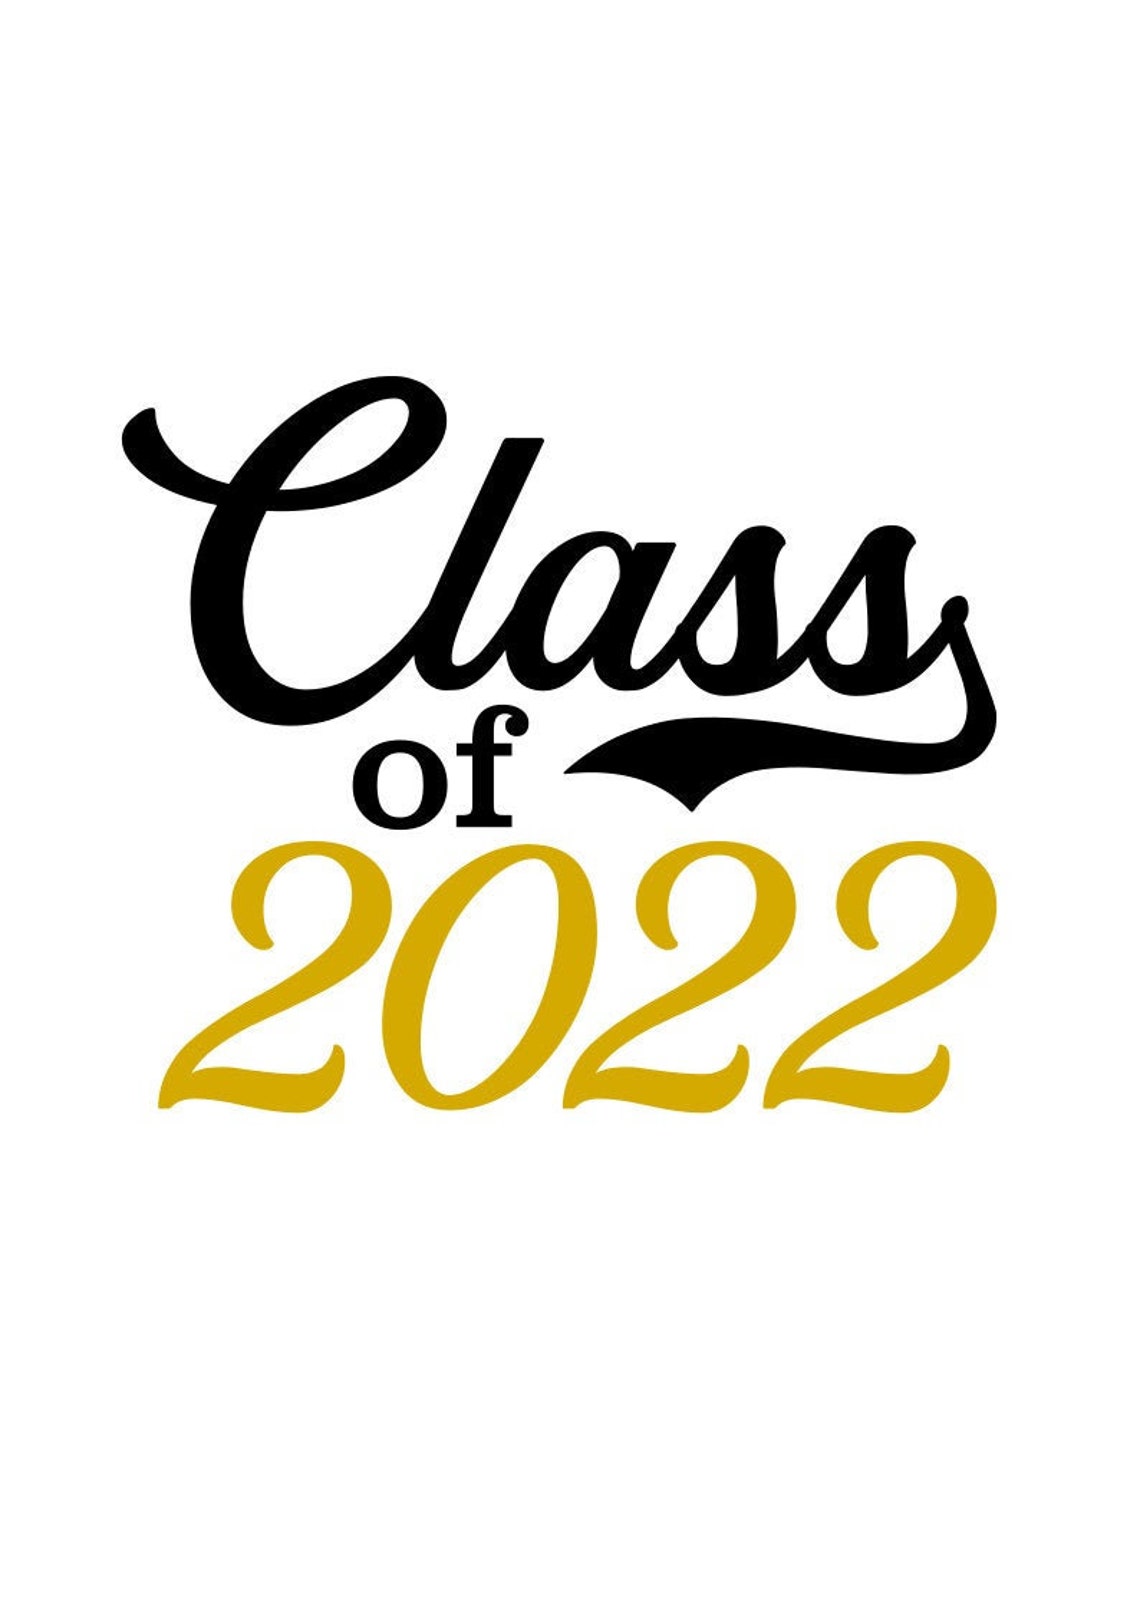 Senior 2022 Svg Class Of 2022 Svg Graduation 2022 Digital Etsy